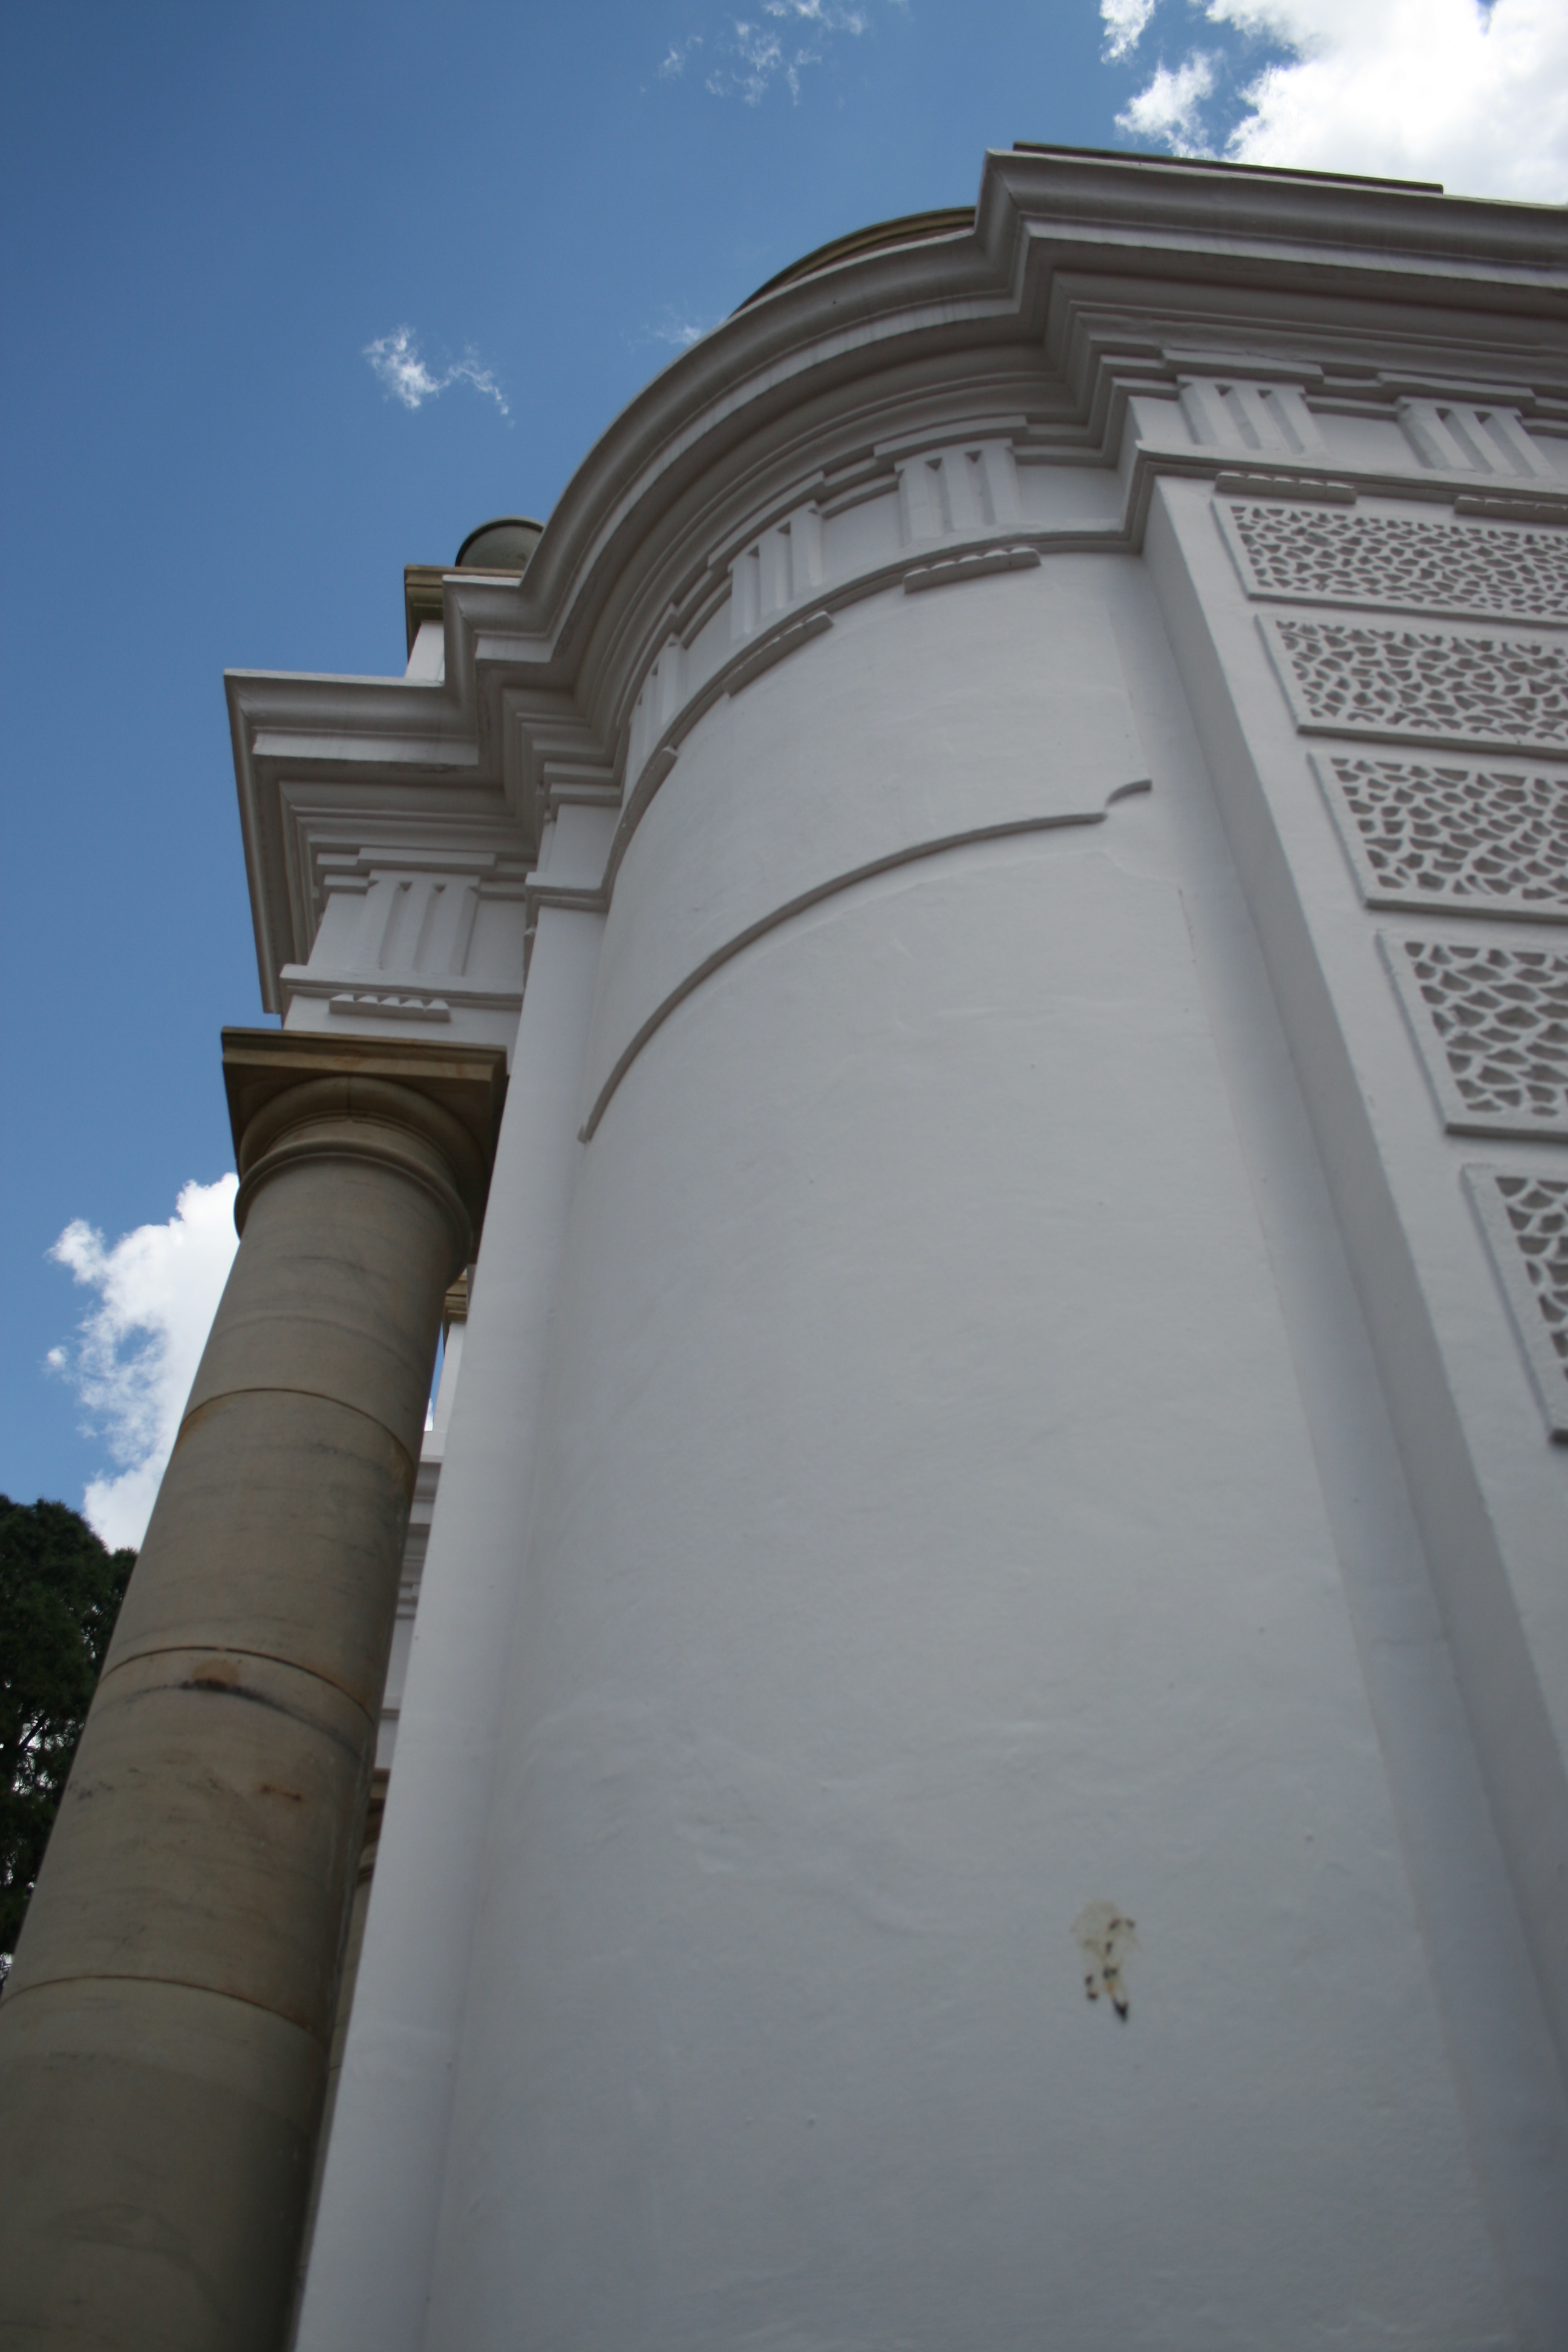 Portico pillar, Museum, Pillar, Portico, Stone, HQ Photo